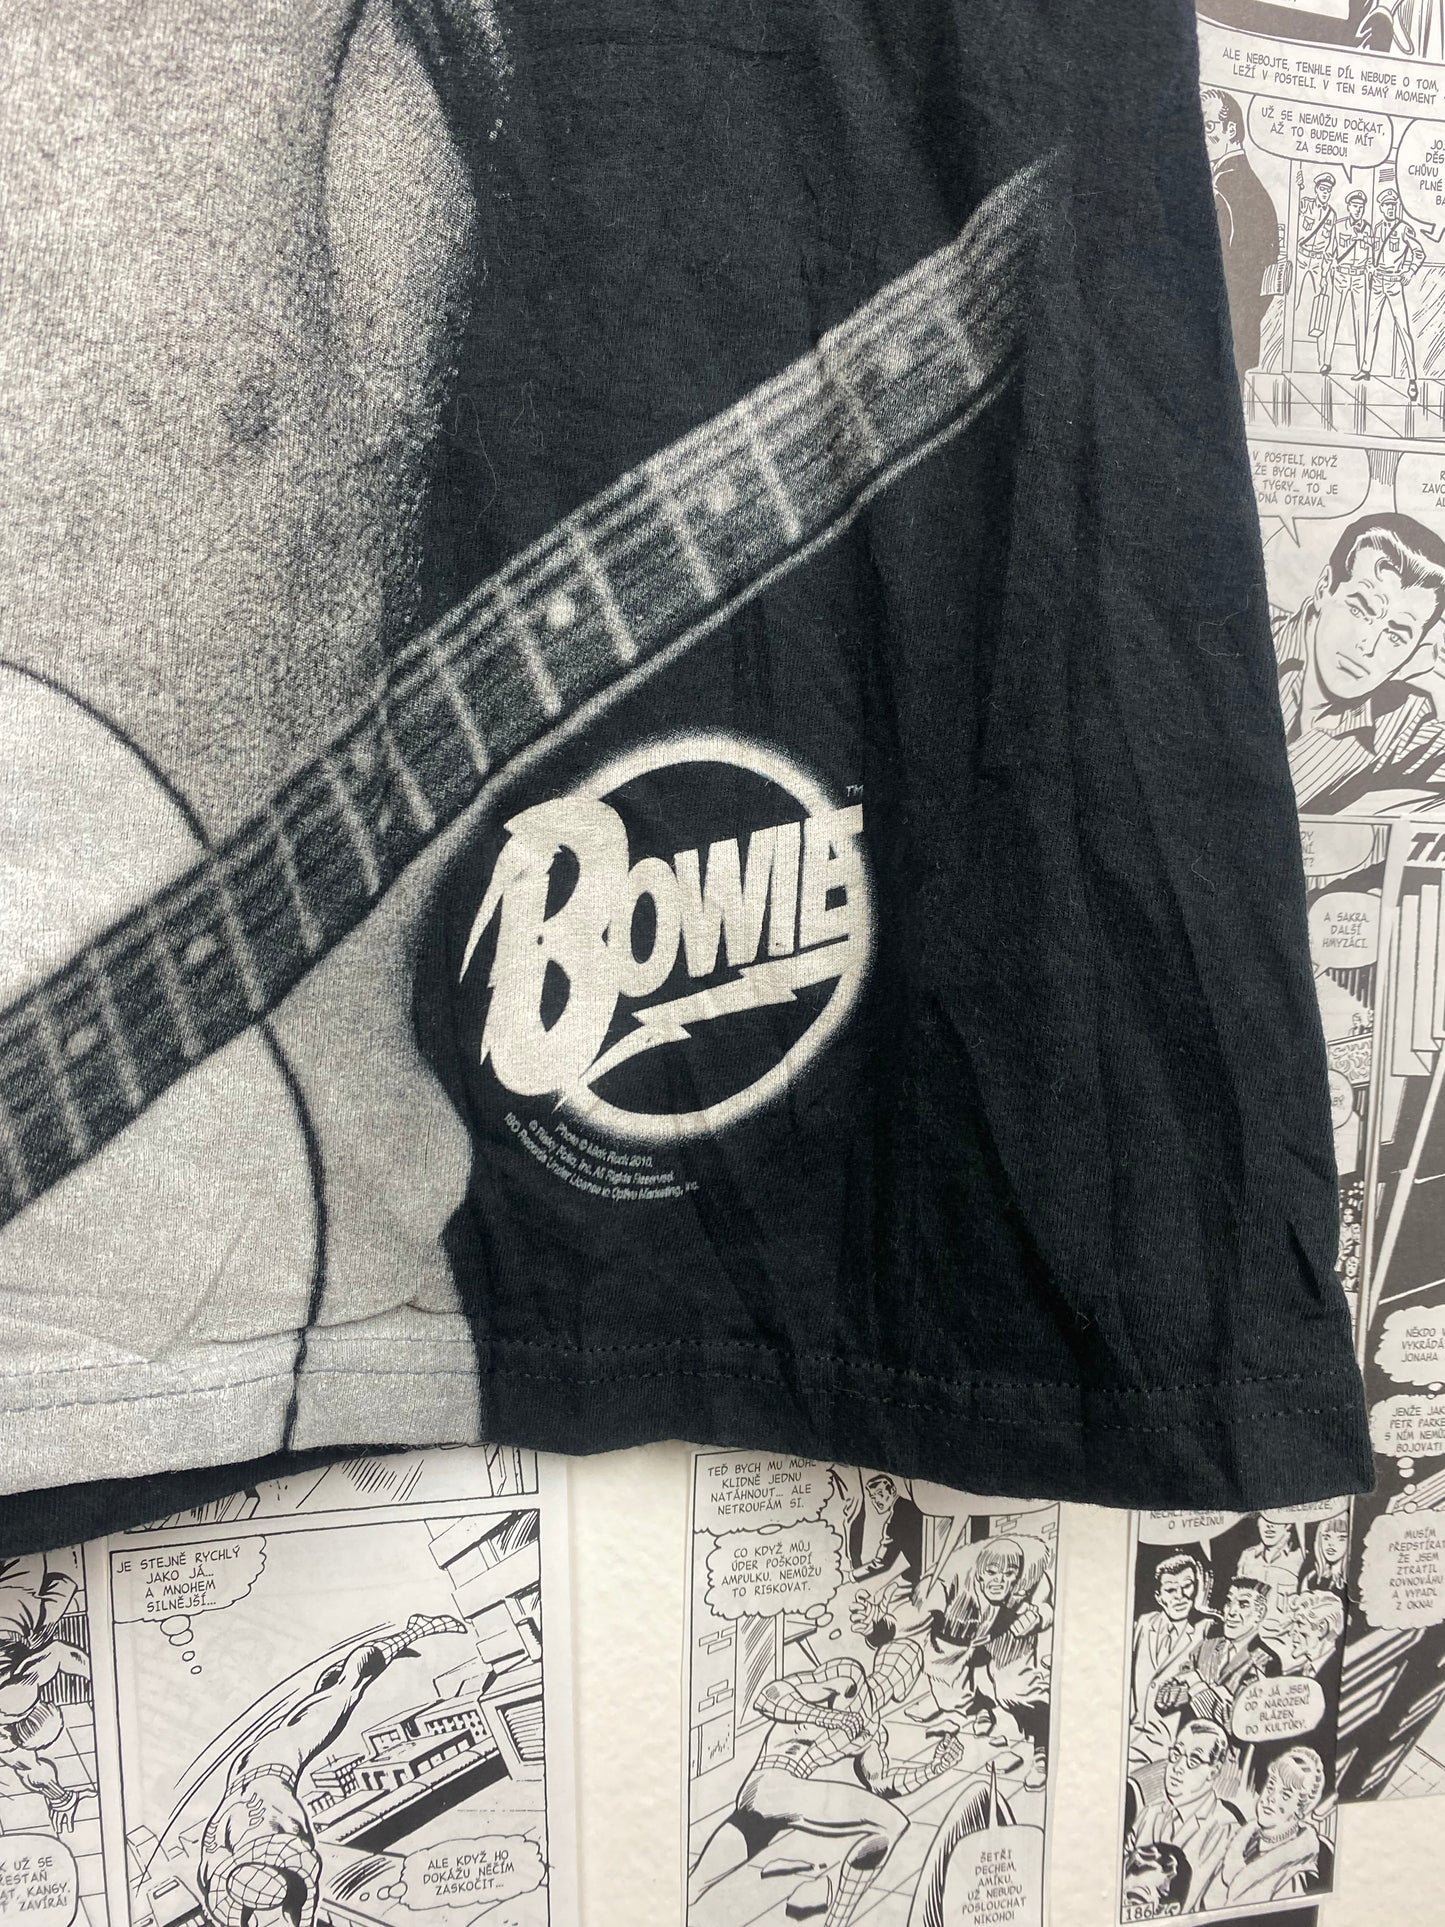 David Bowie - 2016 t-shirt - size S